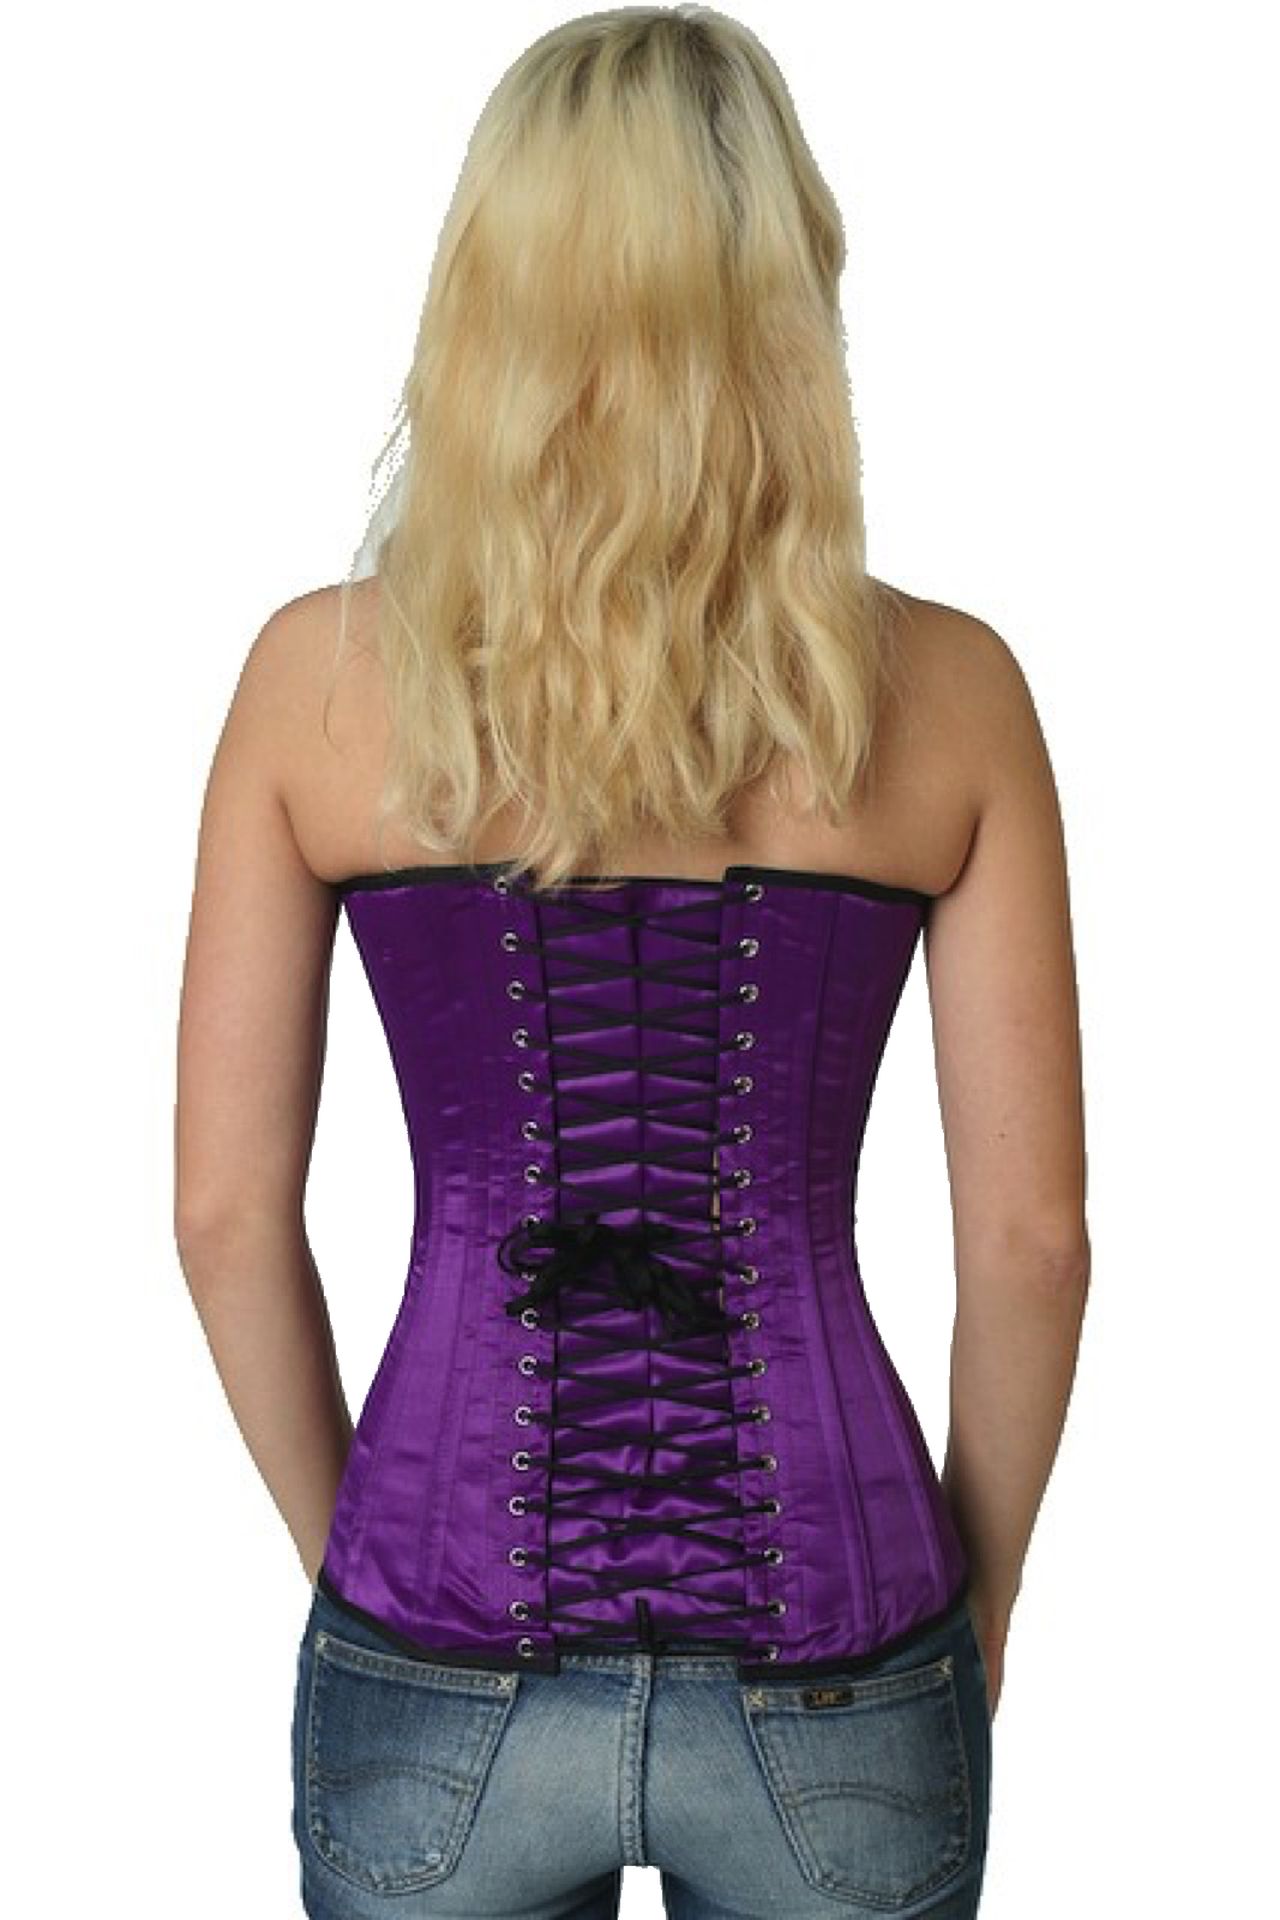 Corse violeta raso sobre pecho corset sy09